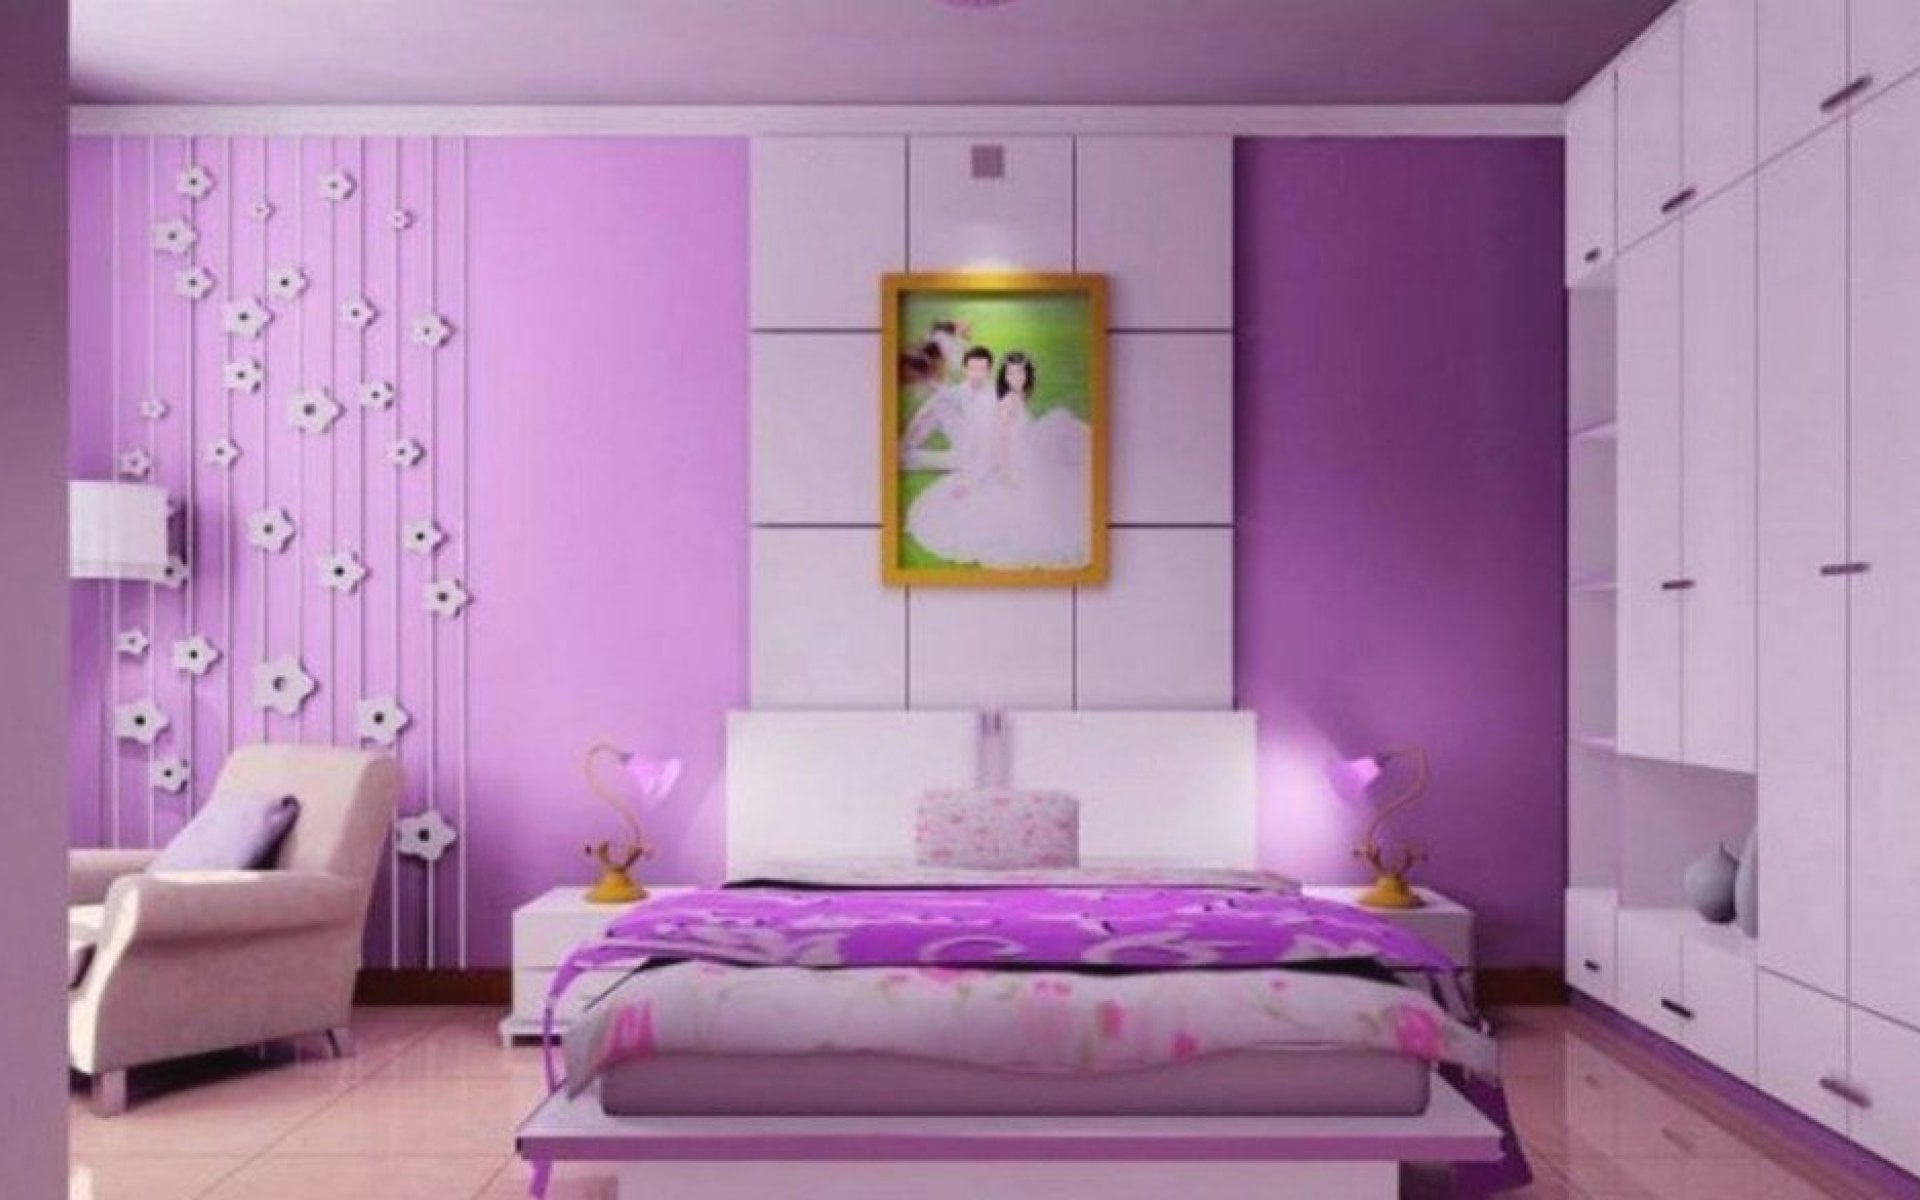 92 Ragam Seni Desain Kamar Tidur Warna Ungu Yang Belum Banyak Diketahui